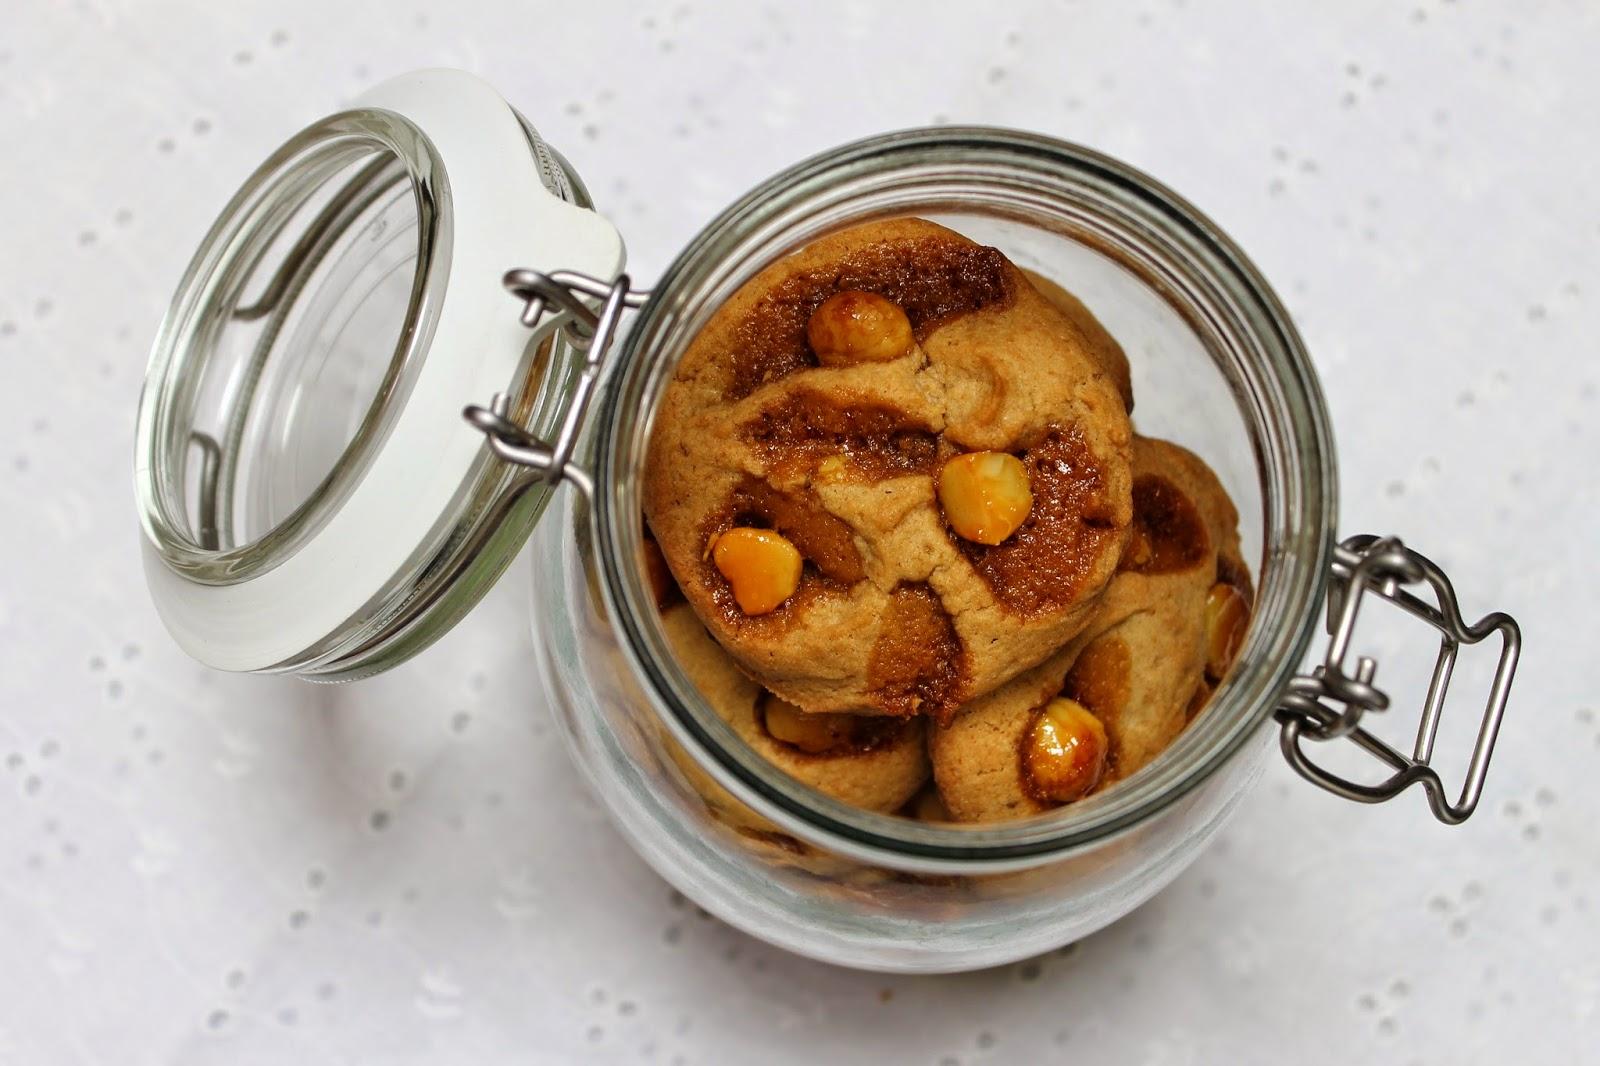 Cookies aux noix de macadamia caramélisées